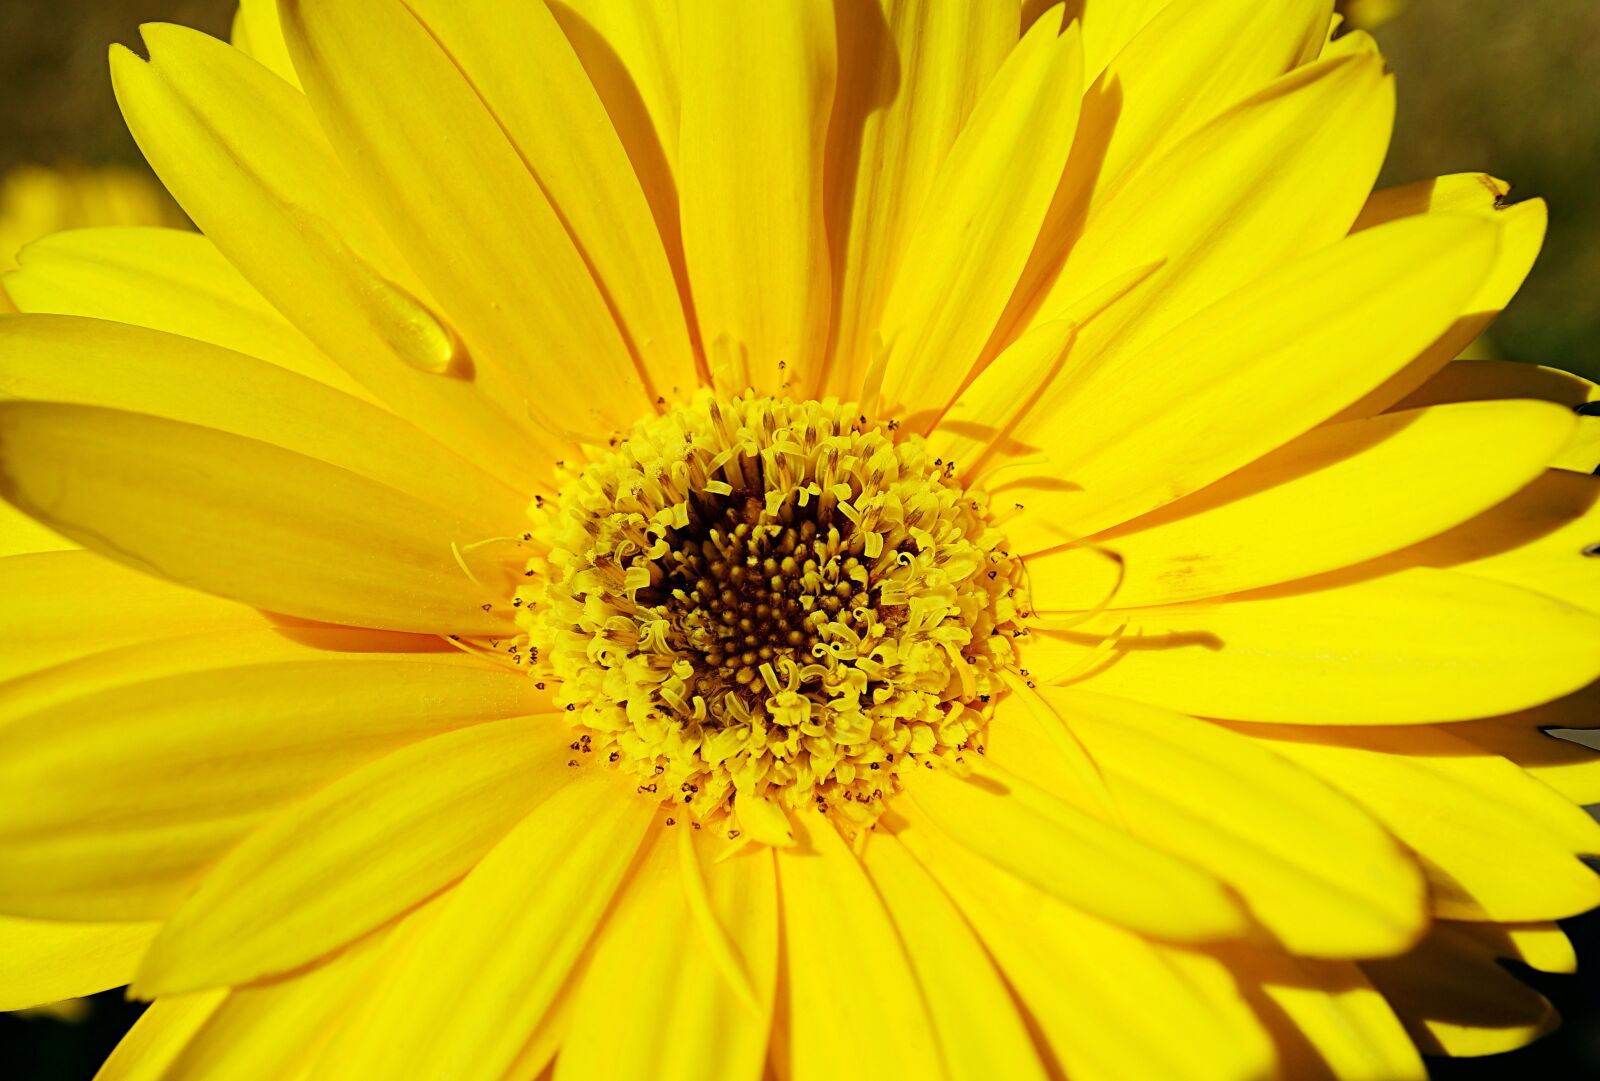 Sony a7 II + Sony E 30mm F3.5 Macro sample photo. Daisy, yellow, bloom photography